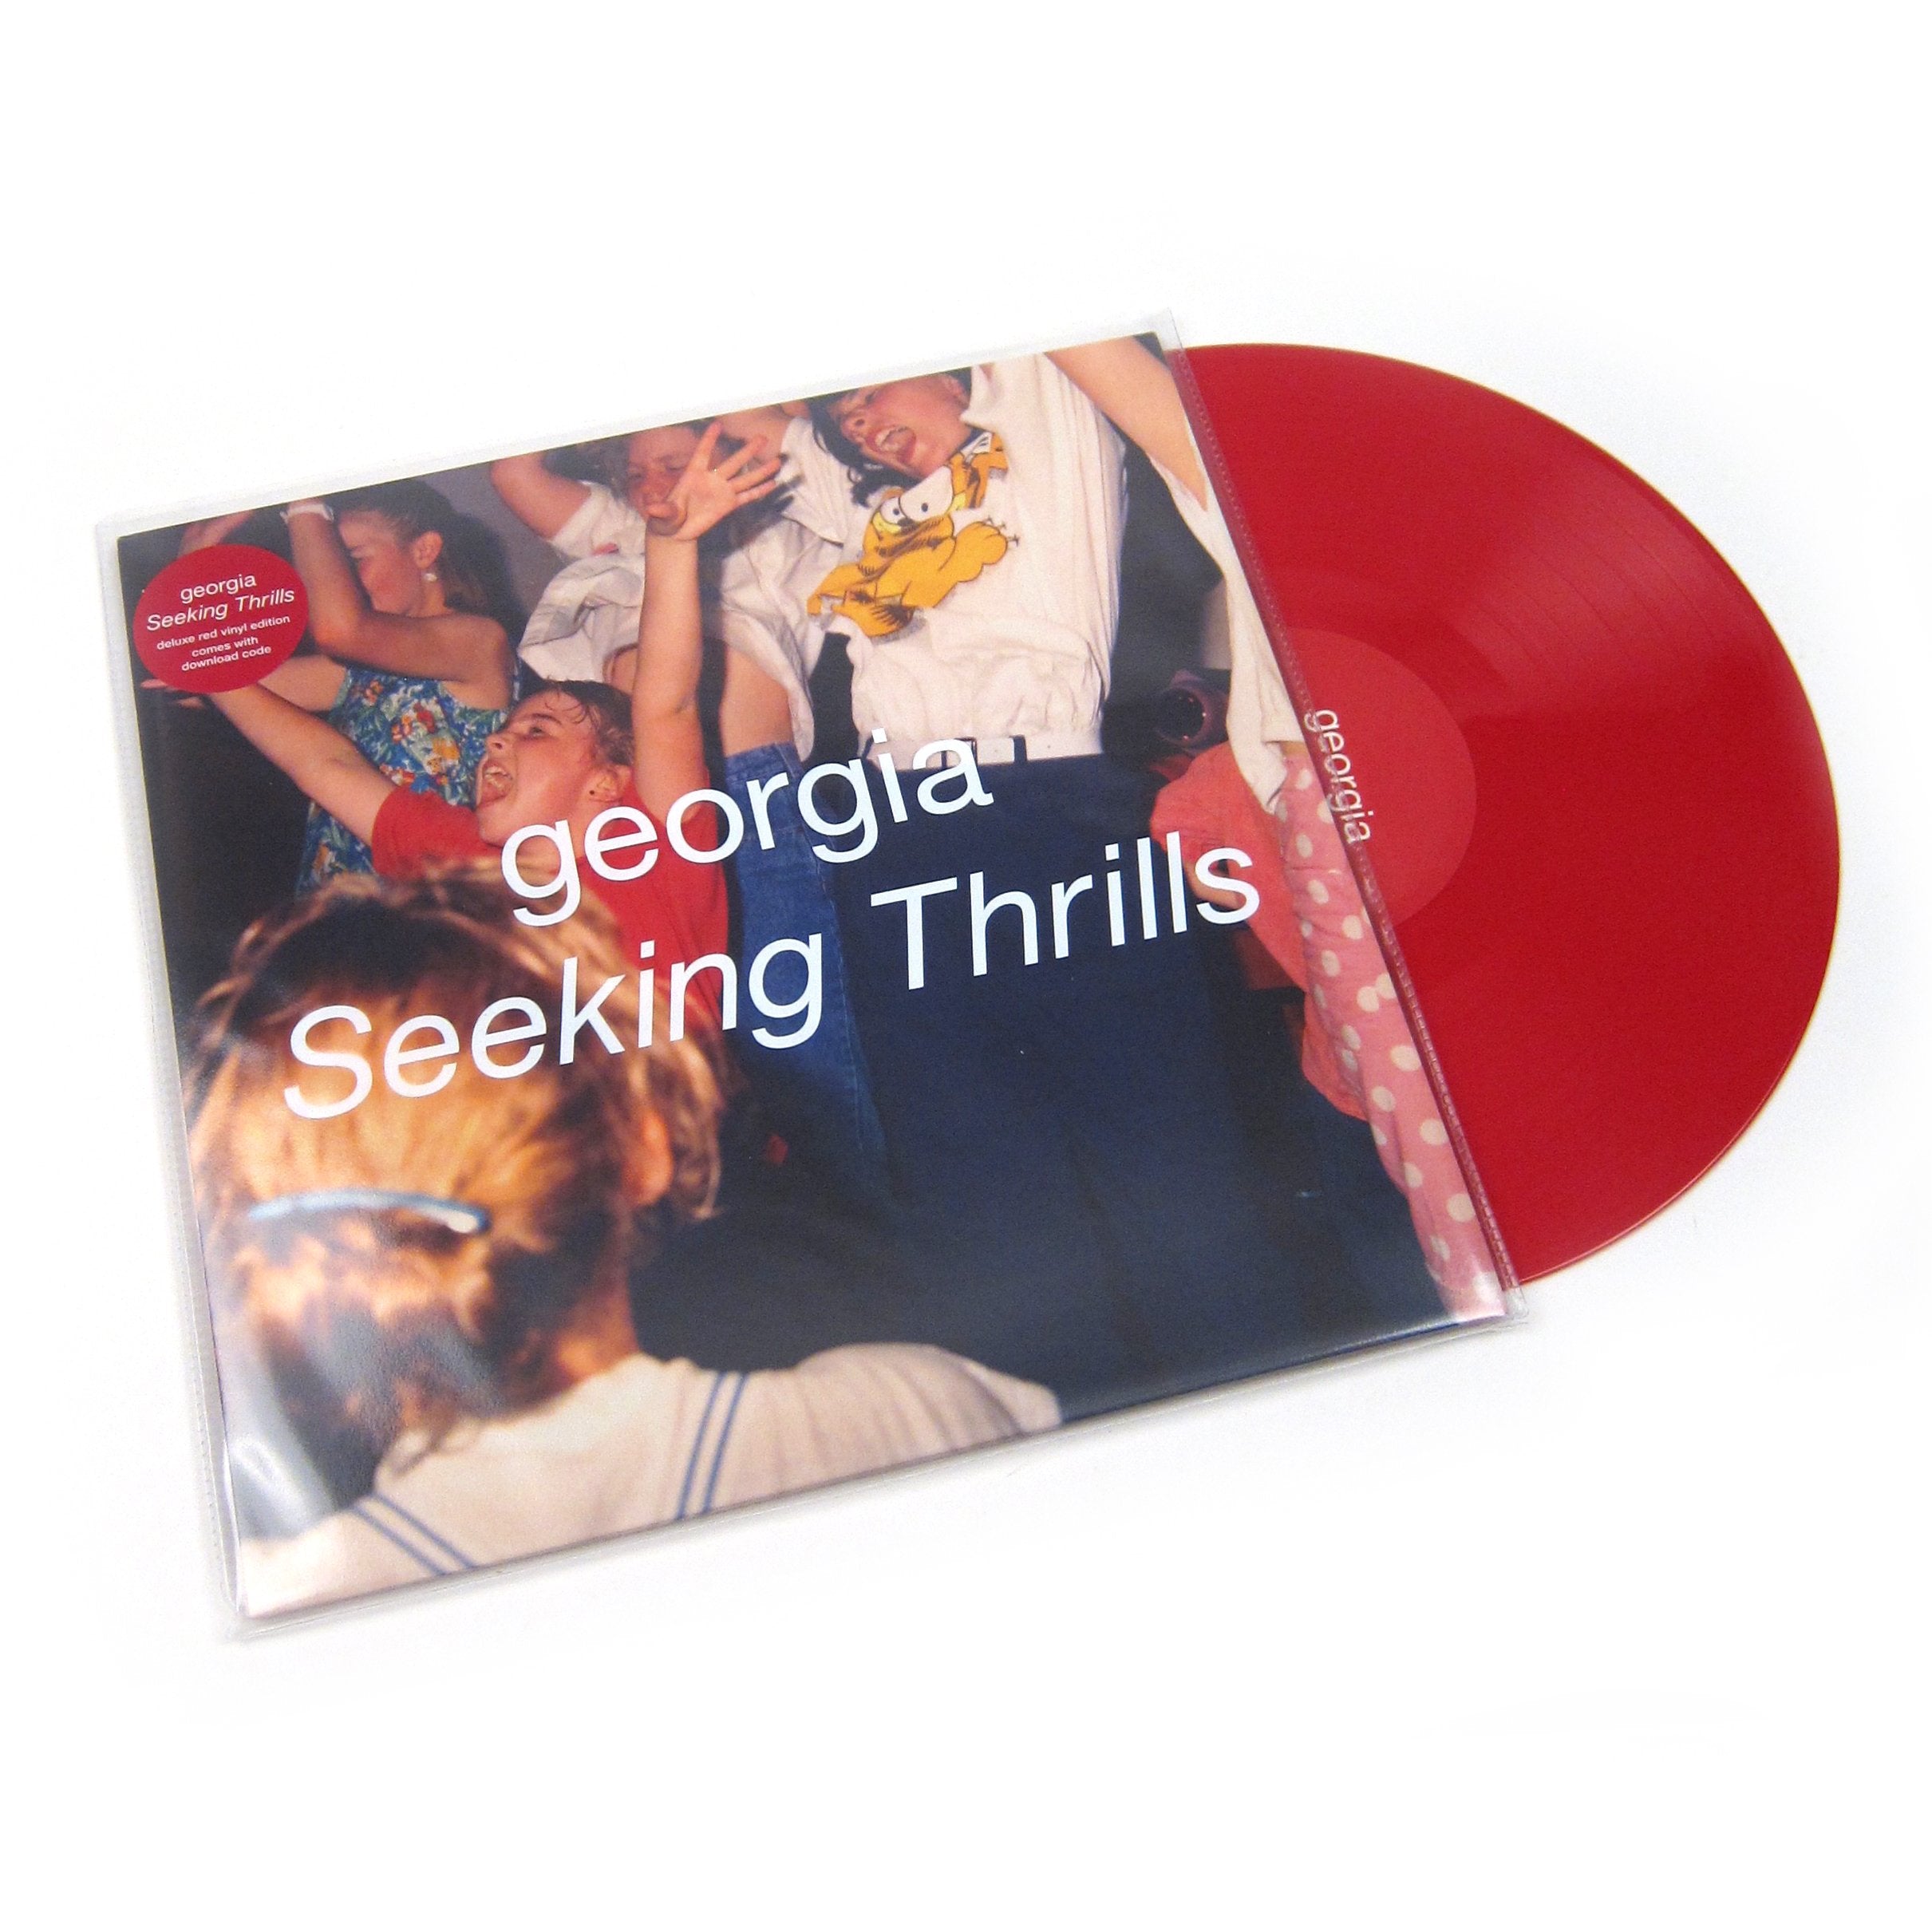 Georgia: Seeking Thrills (Indie Exclusive Colored Vinyl) Vinyl LP